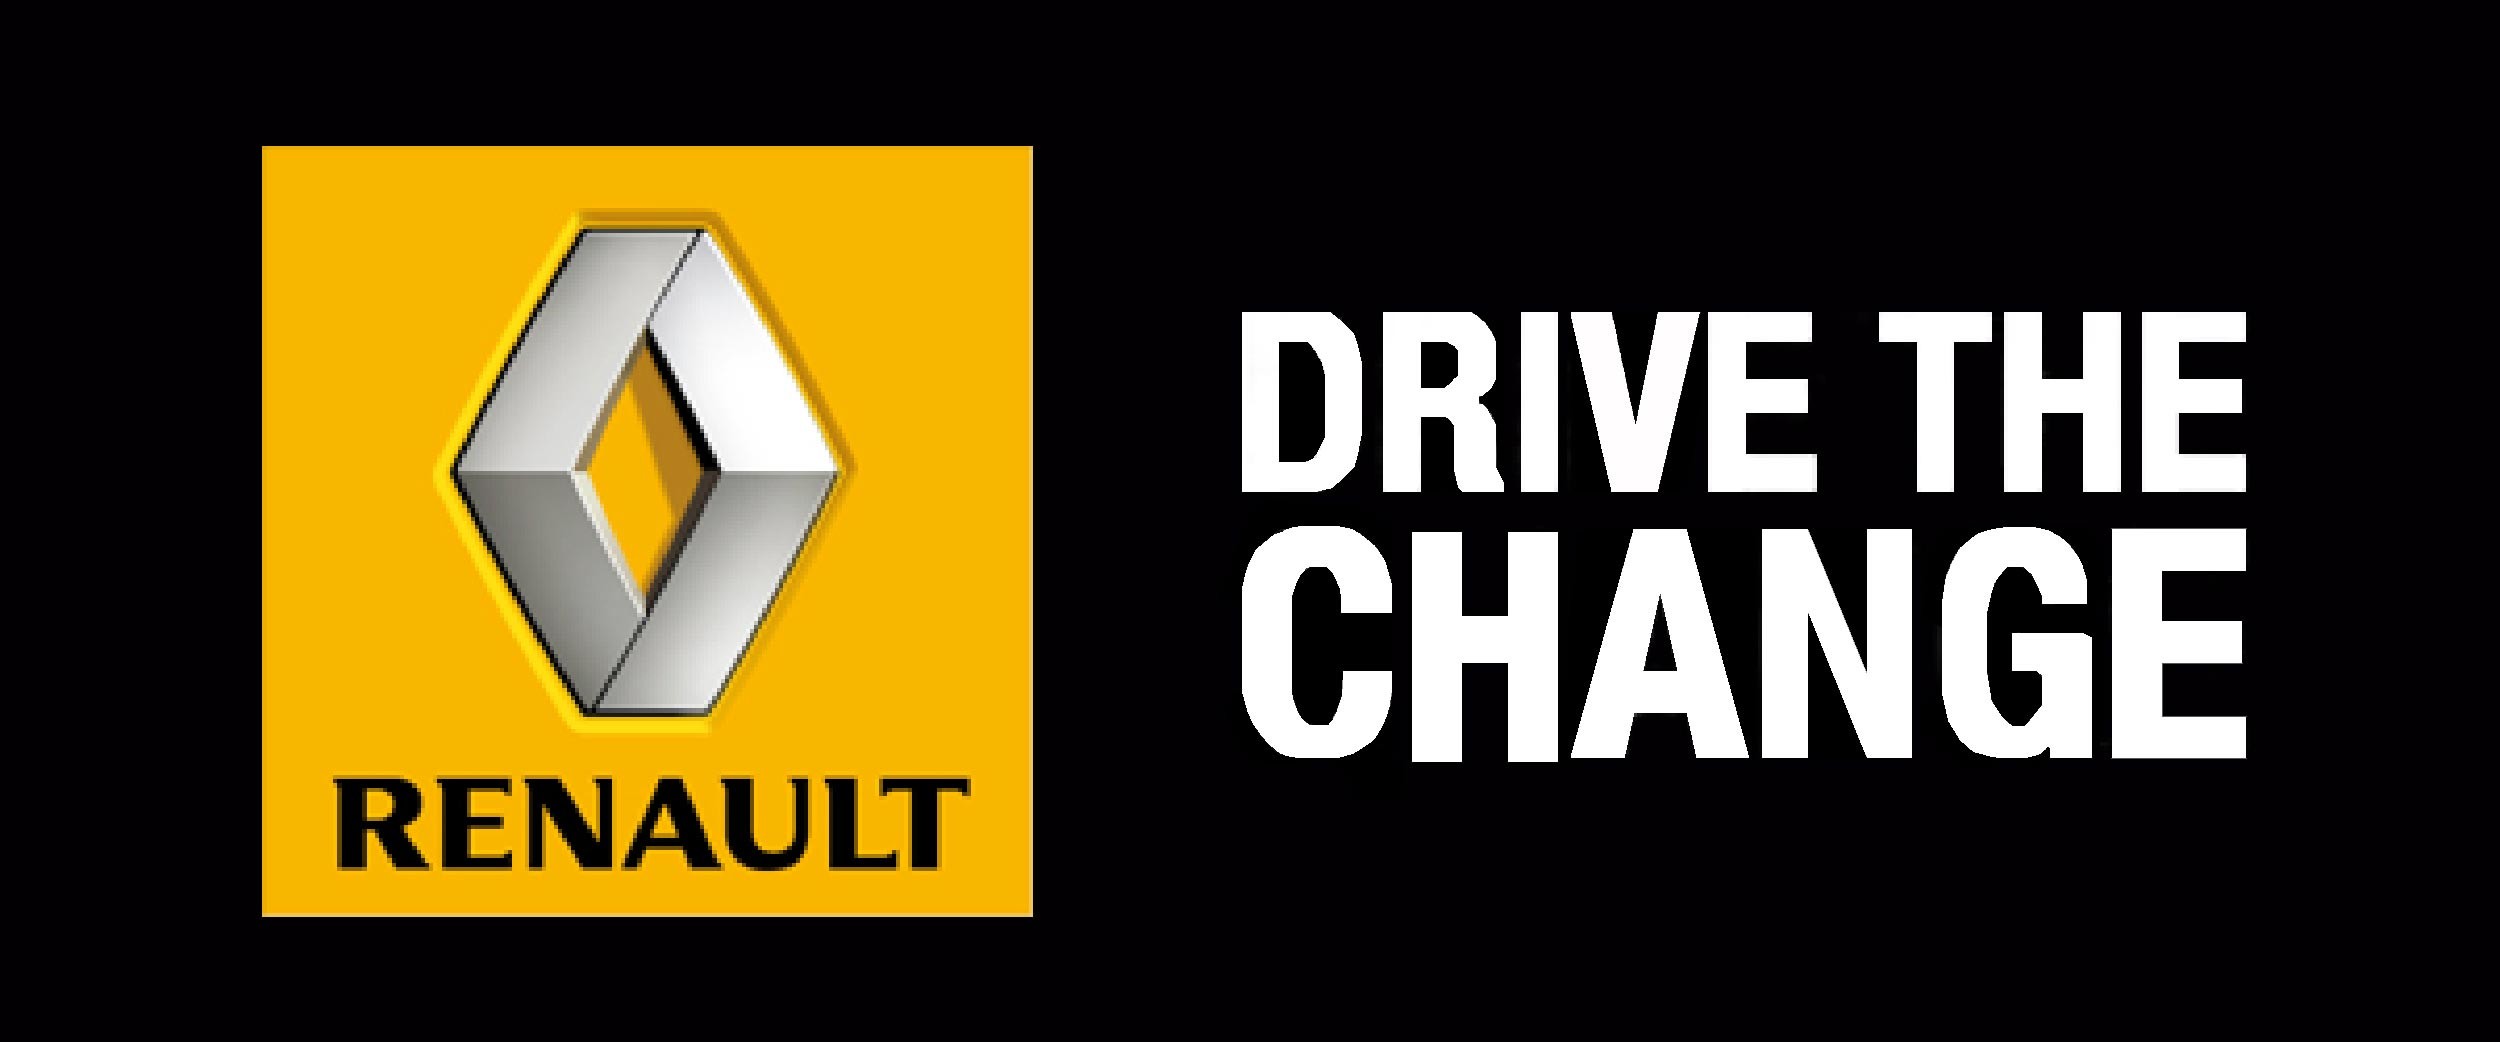 Рено драйвер. Renault Drive the change. Рено тема. Рено логотип. Лозунг Рено.